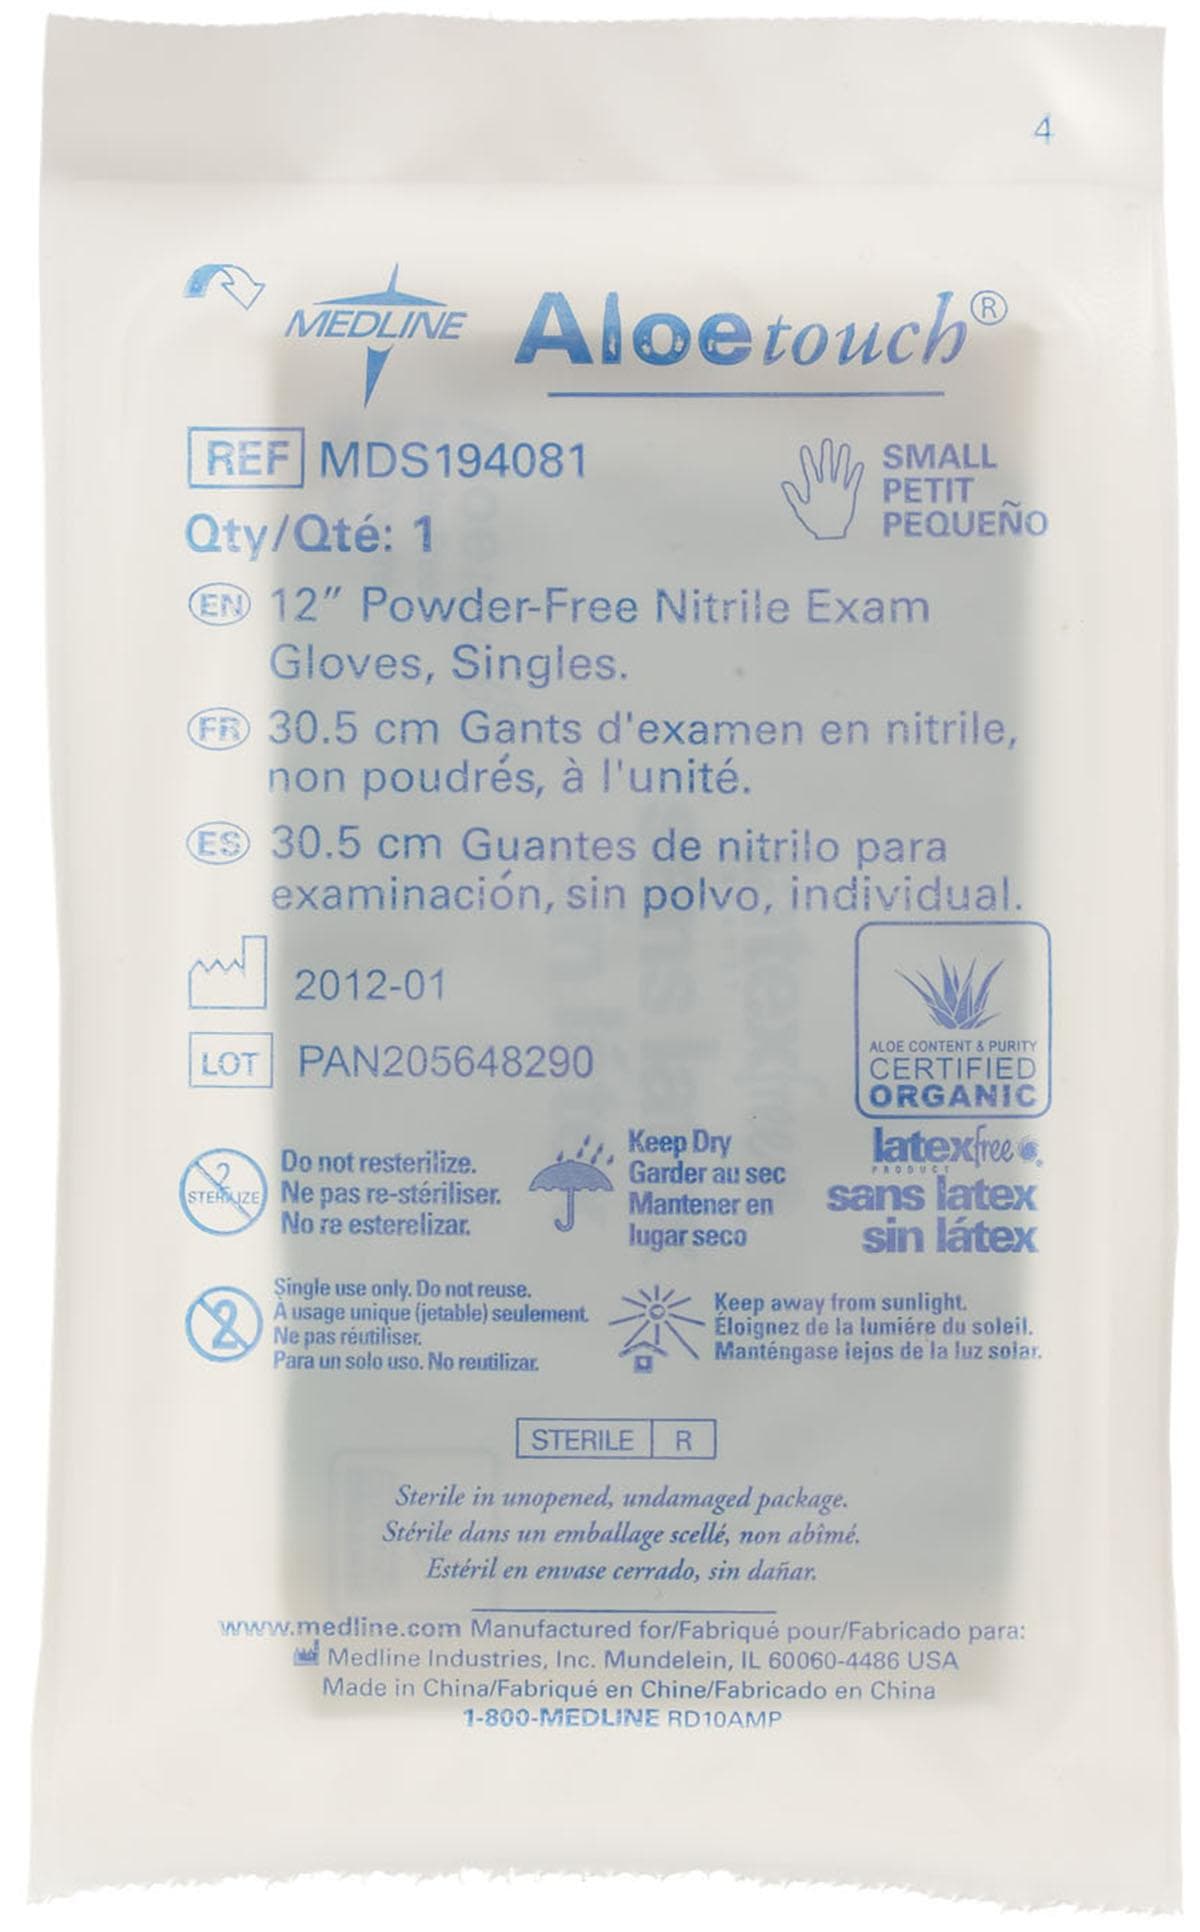 Medline S / Case of 400 Medline AloeTouch Sterile 12" Powder-Free Nitrile Exam Gloves